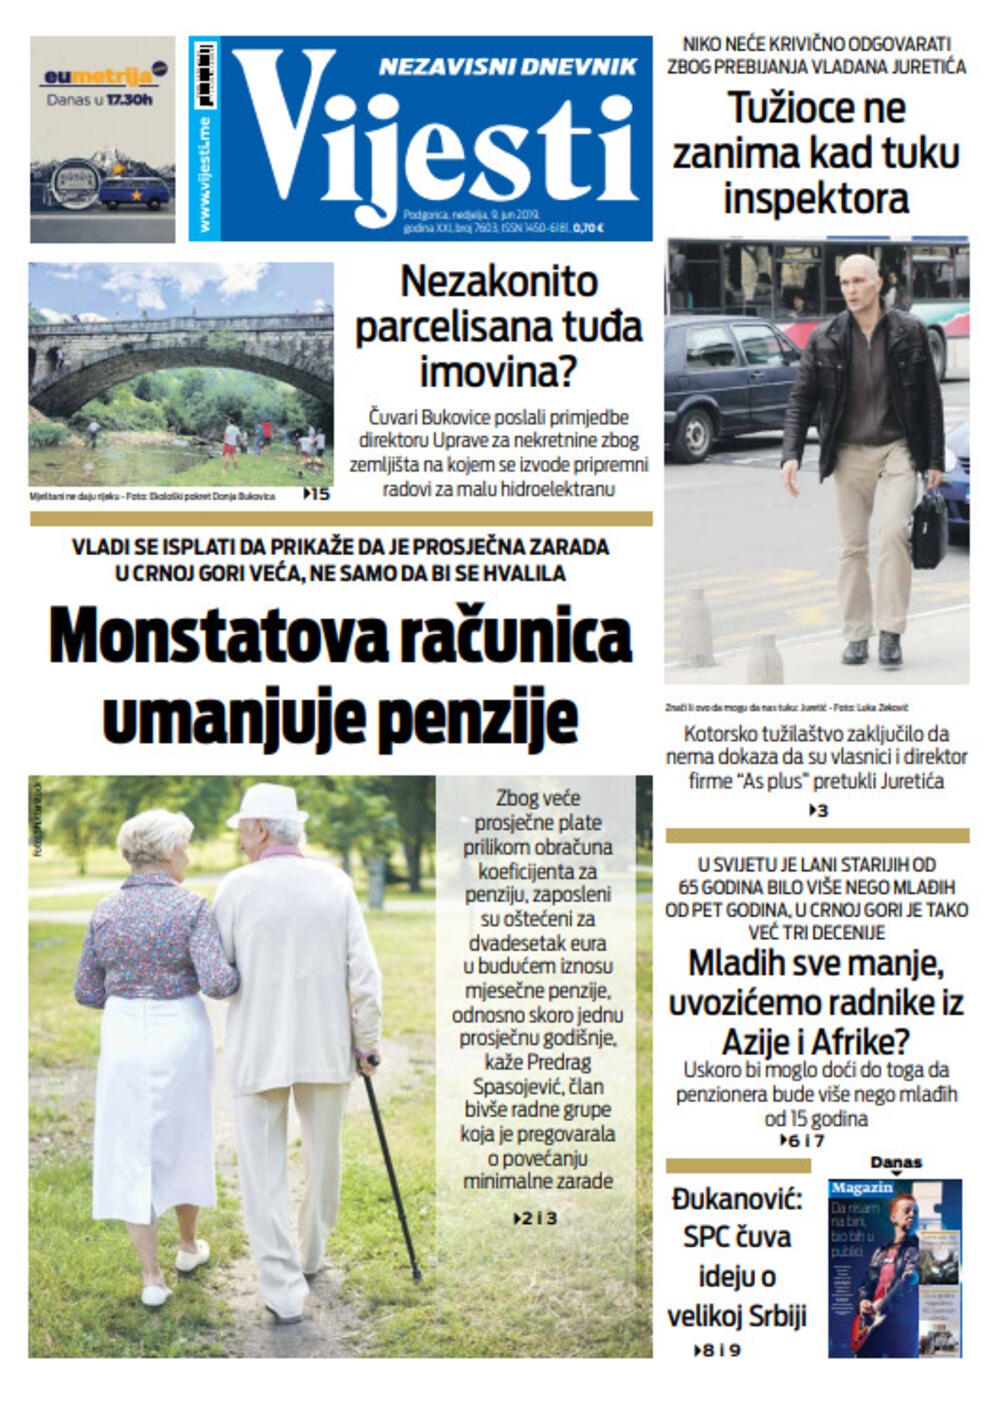 Naslovna strana "Vijesti" za deveti jun, Foto: "Vijesti"